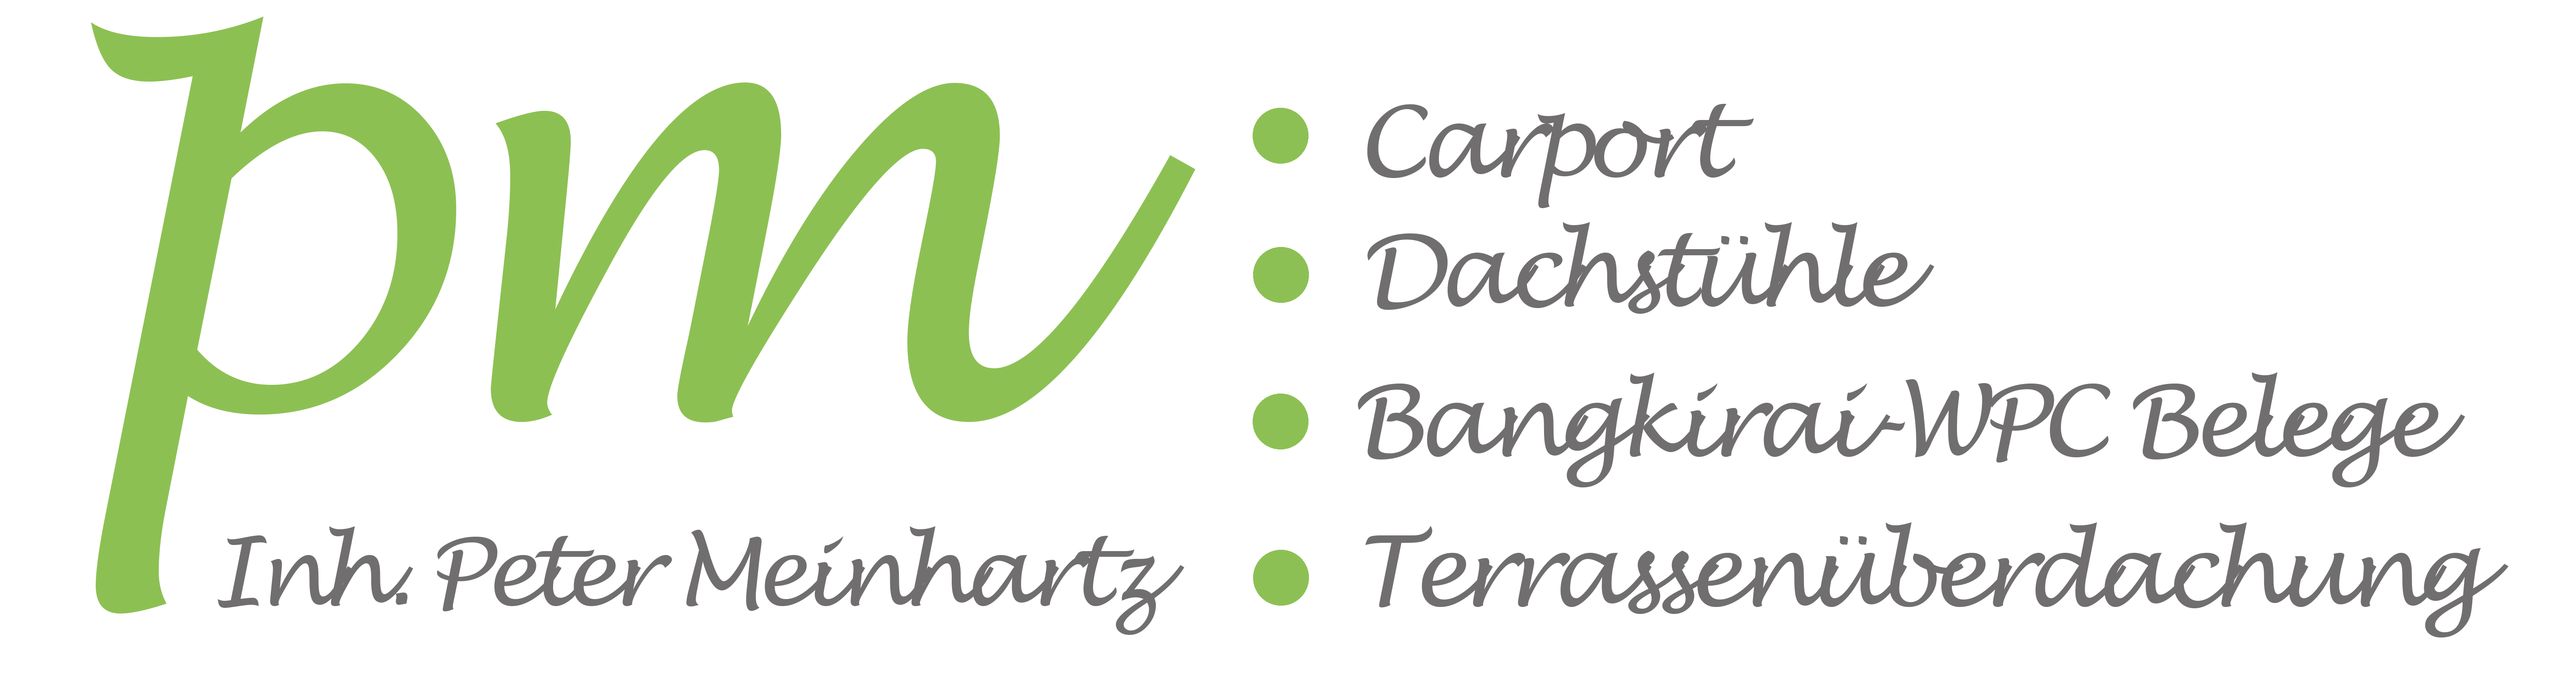 Meinhartz GmbH • Carport • Terrassenüberdachung • Zimmerei • Holzbau